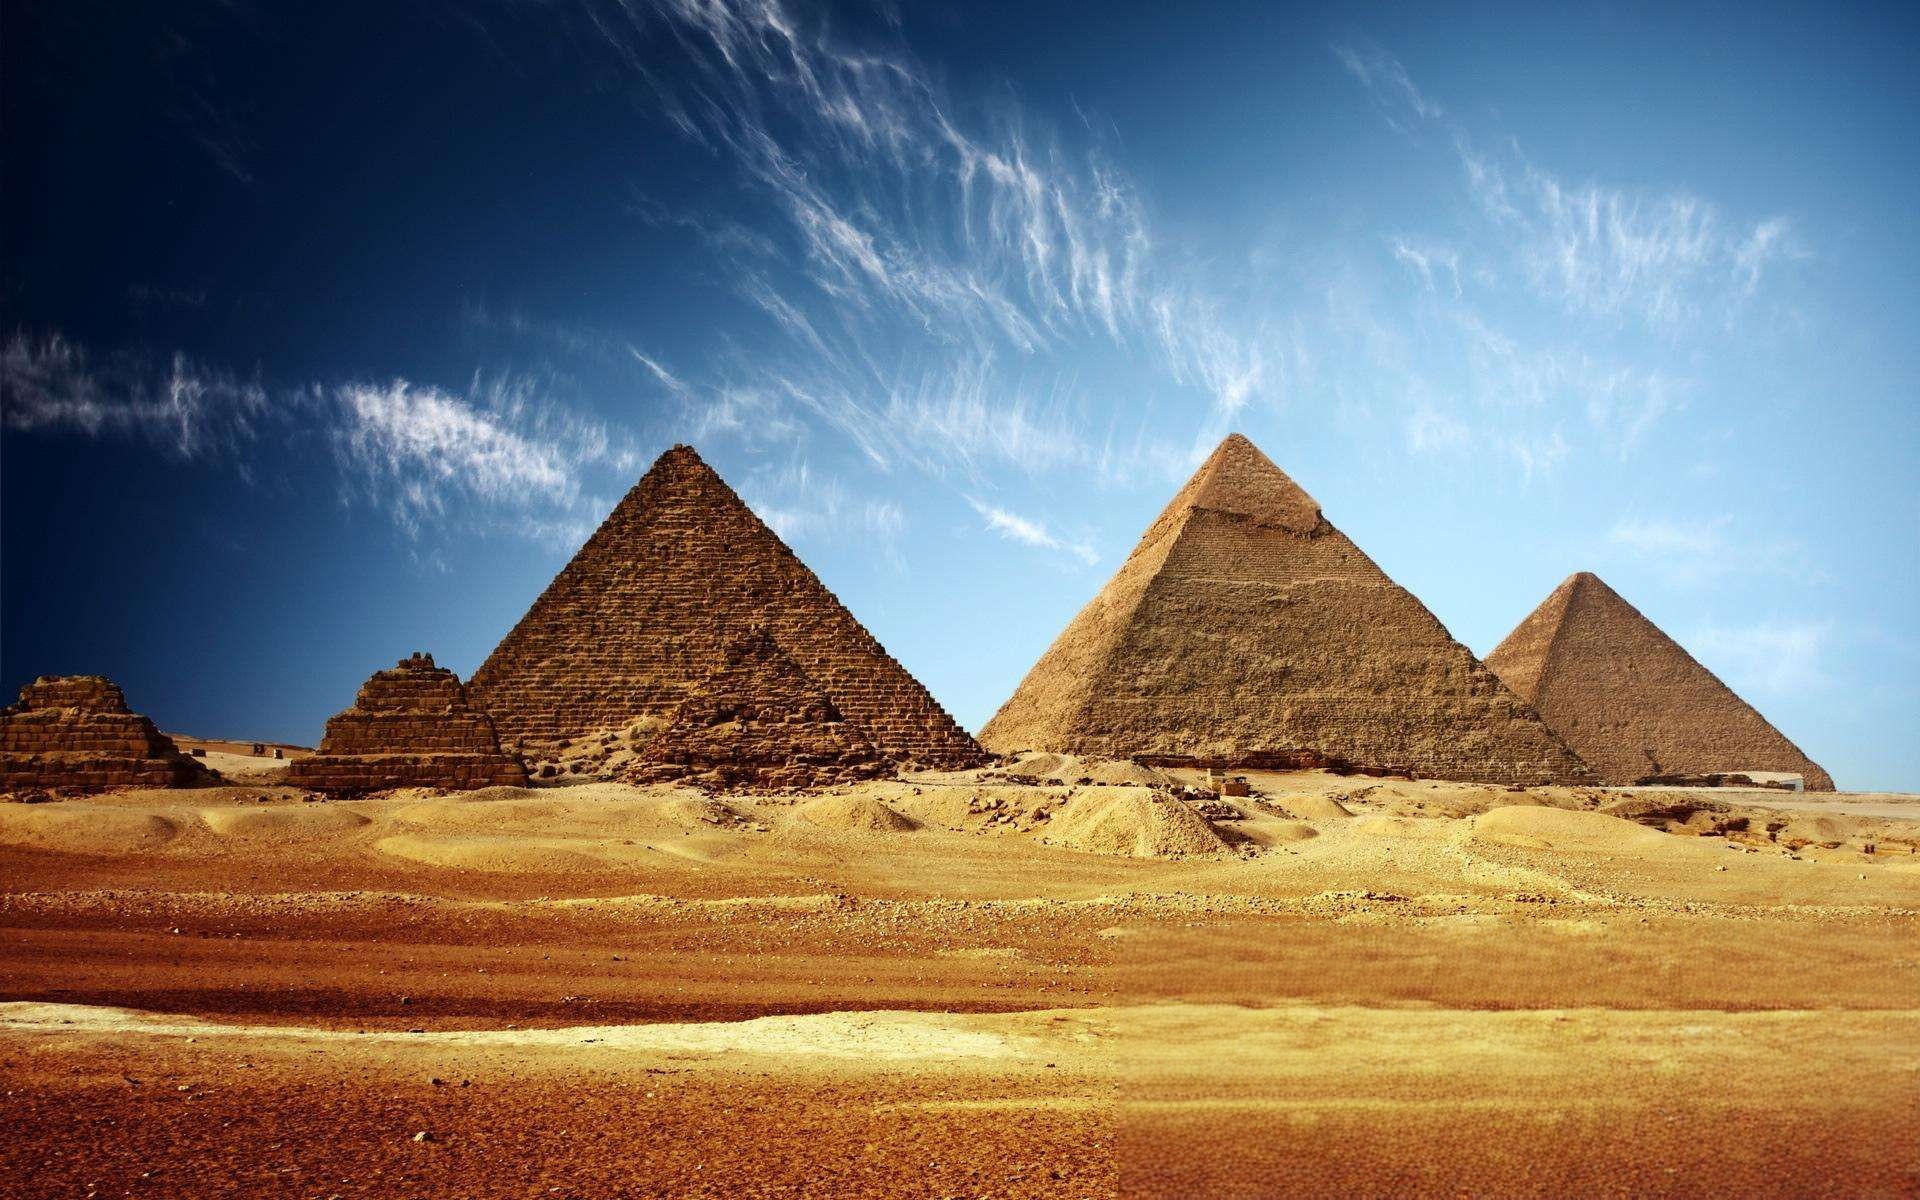 揭秘埃及金字塔未解之谜 埃及金字塔究竟隐藏什么秘密